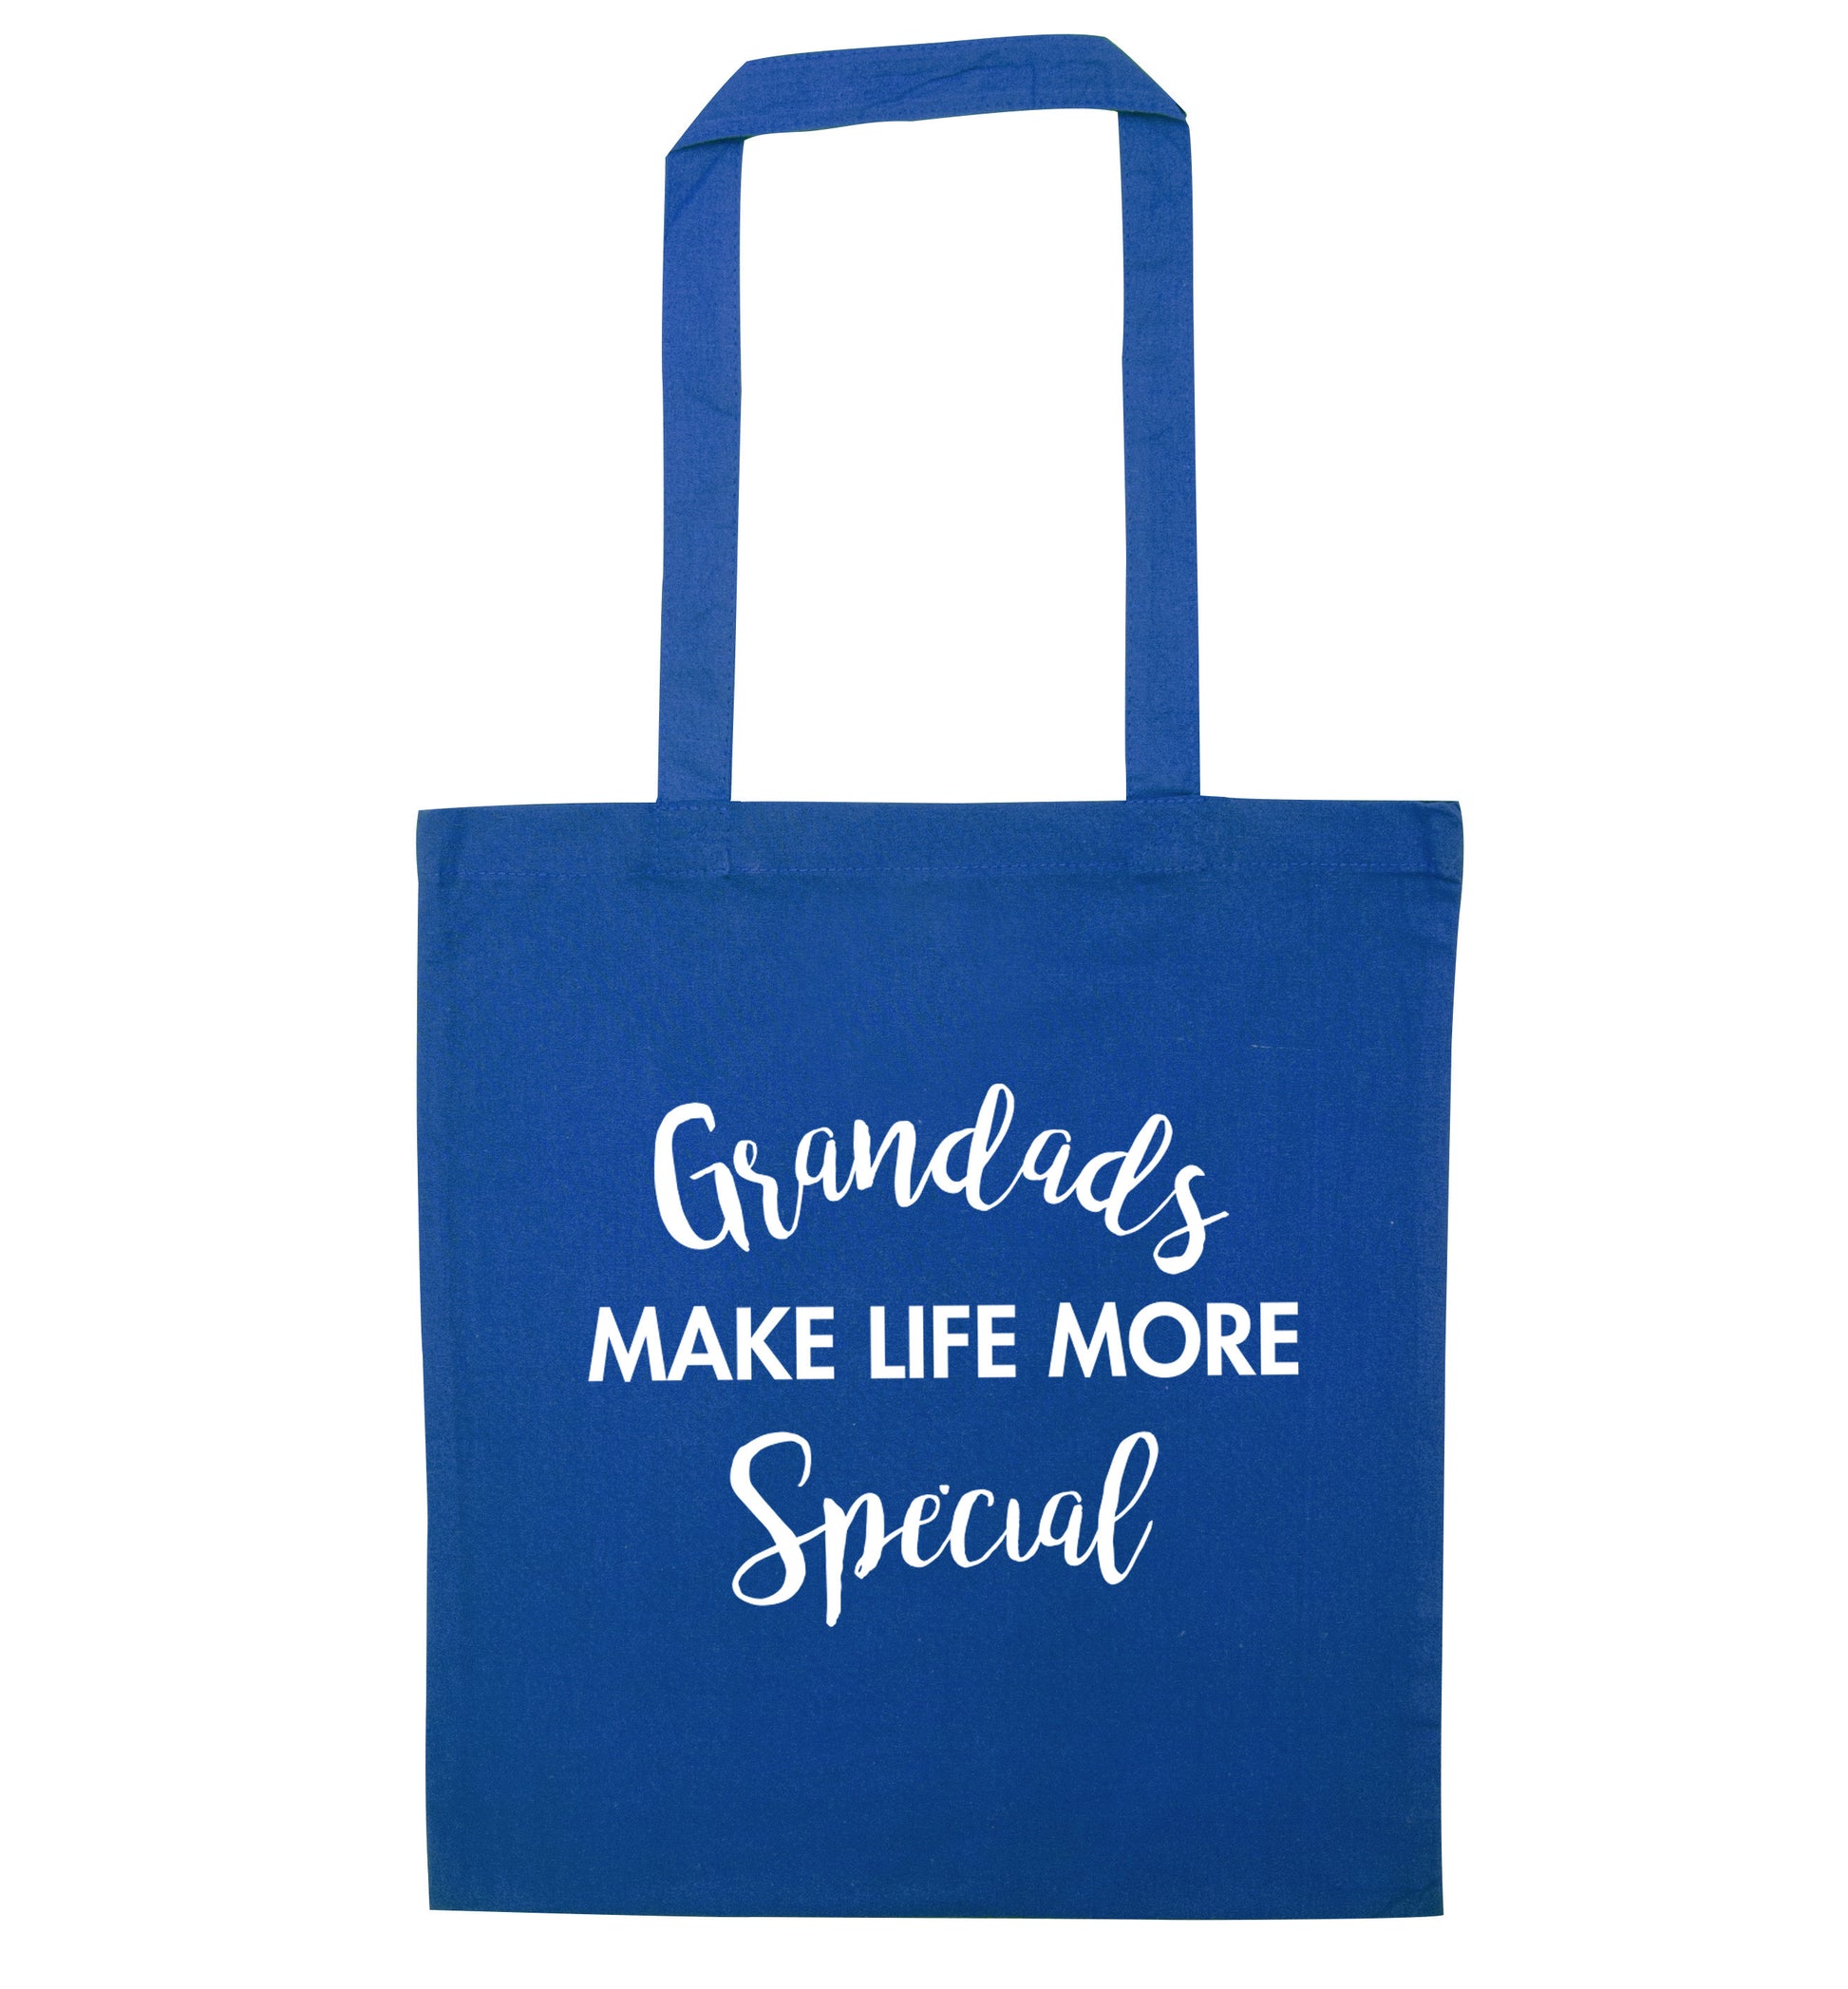 Grandads make life more special blue tote bag